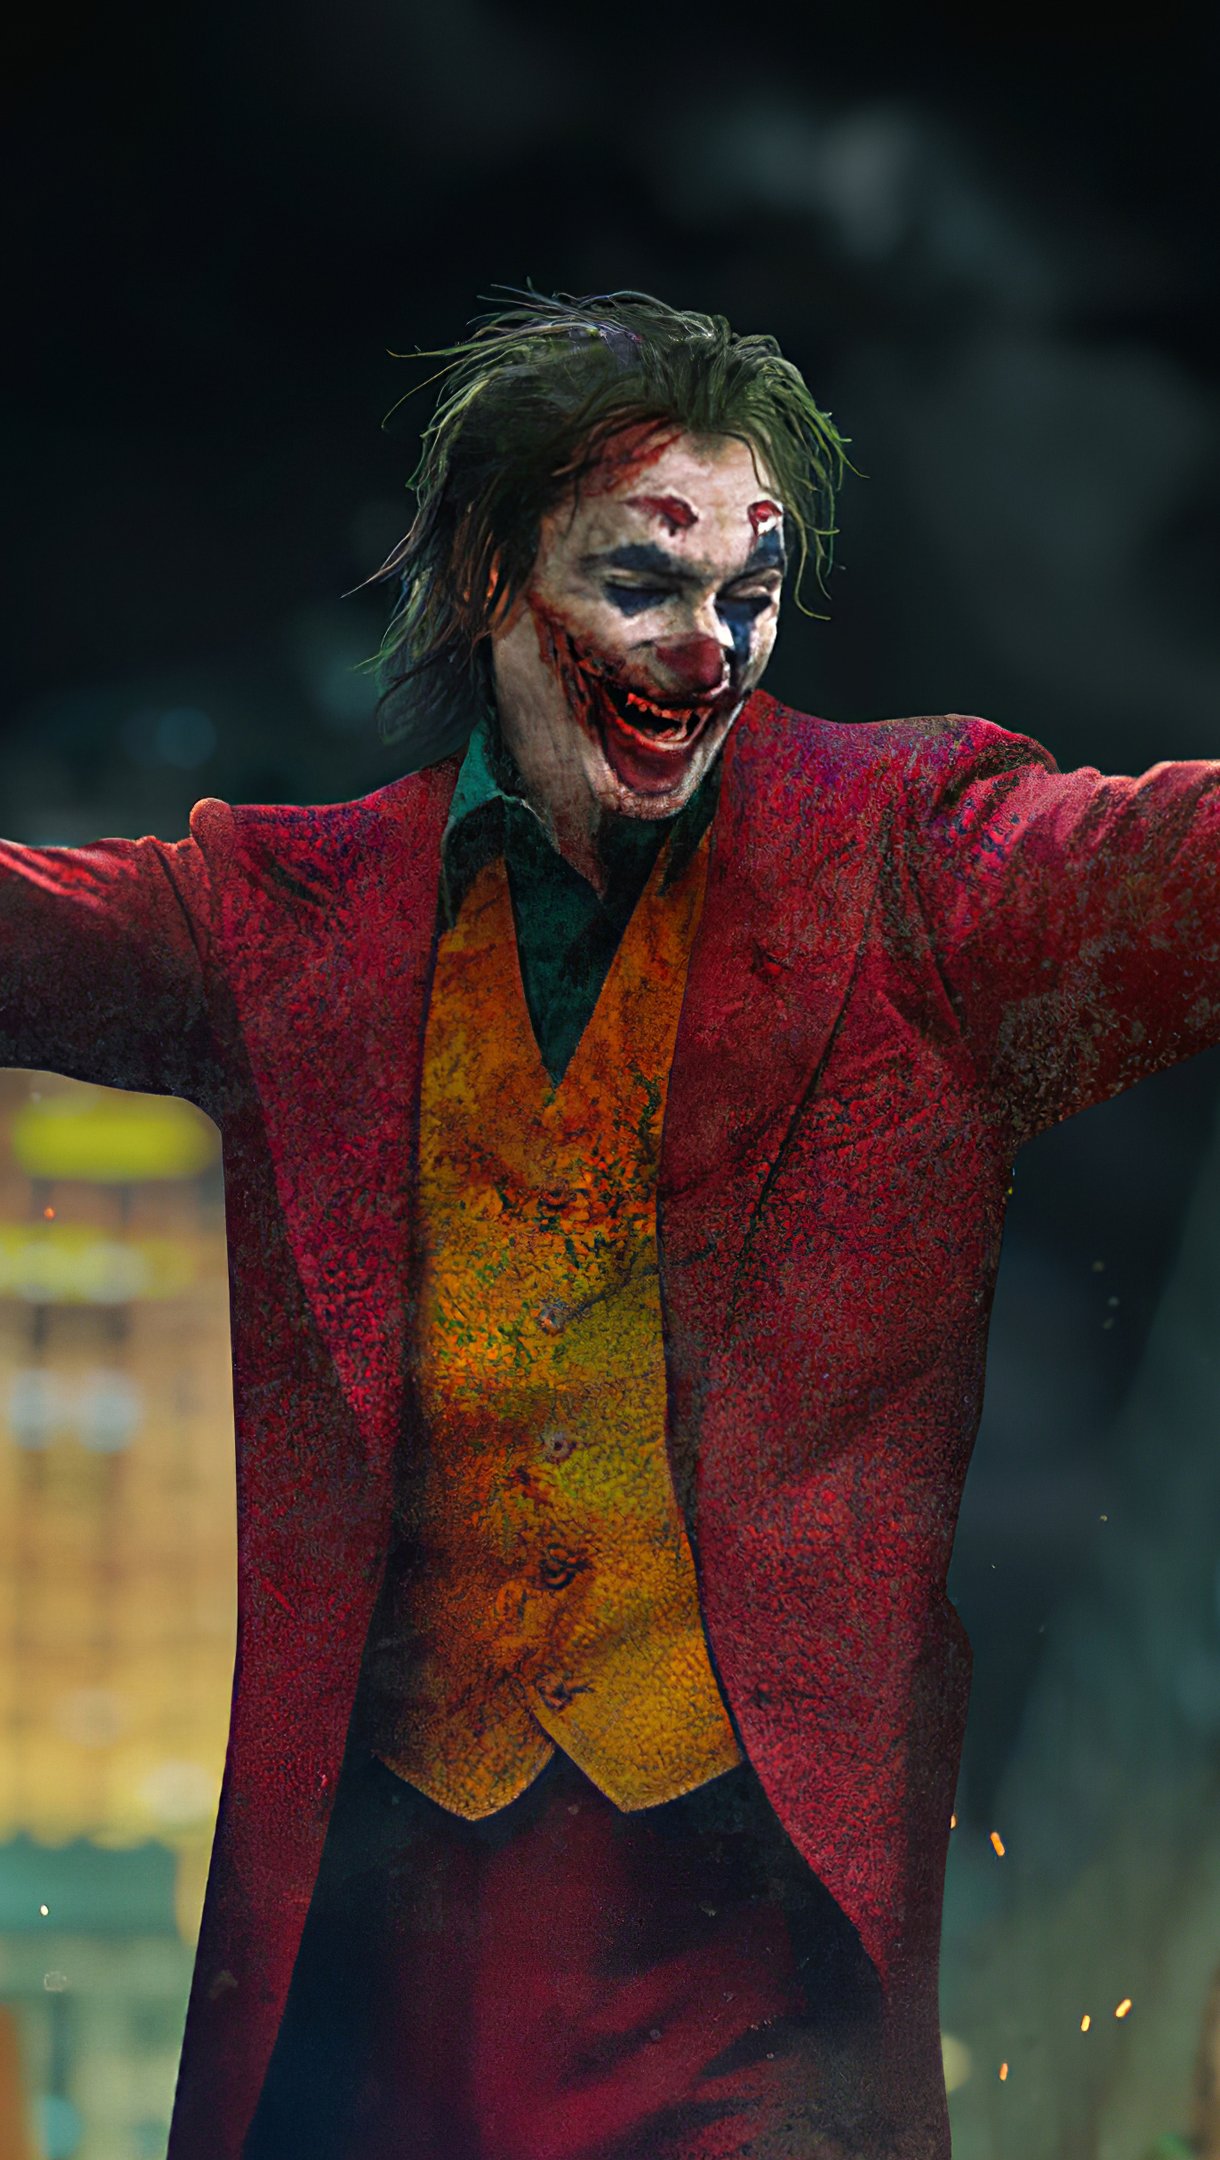 Joker with open arms Wallpaper 4k HD ID:5171